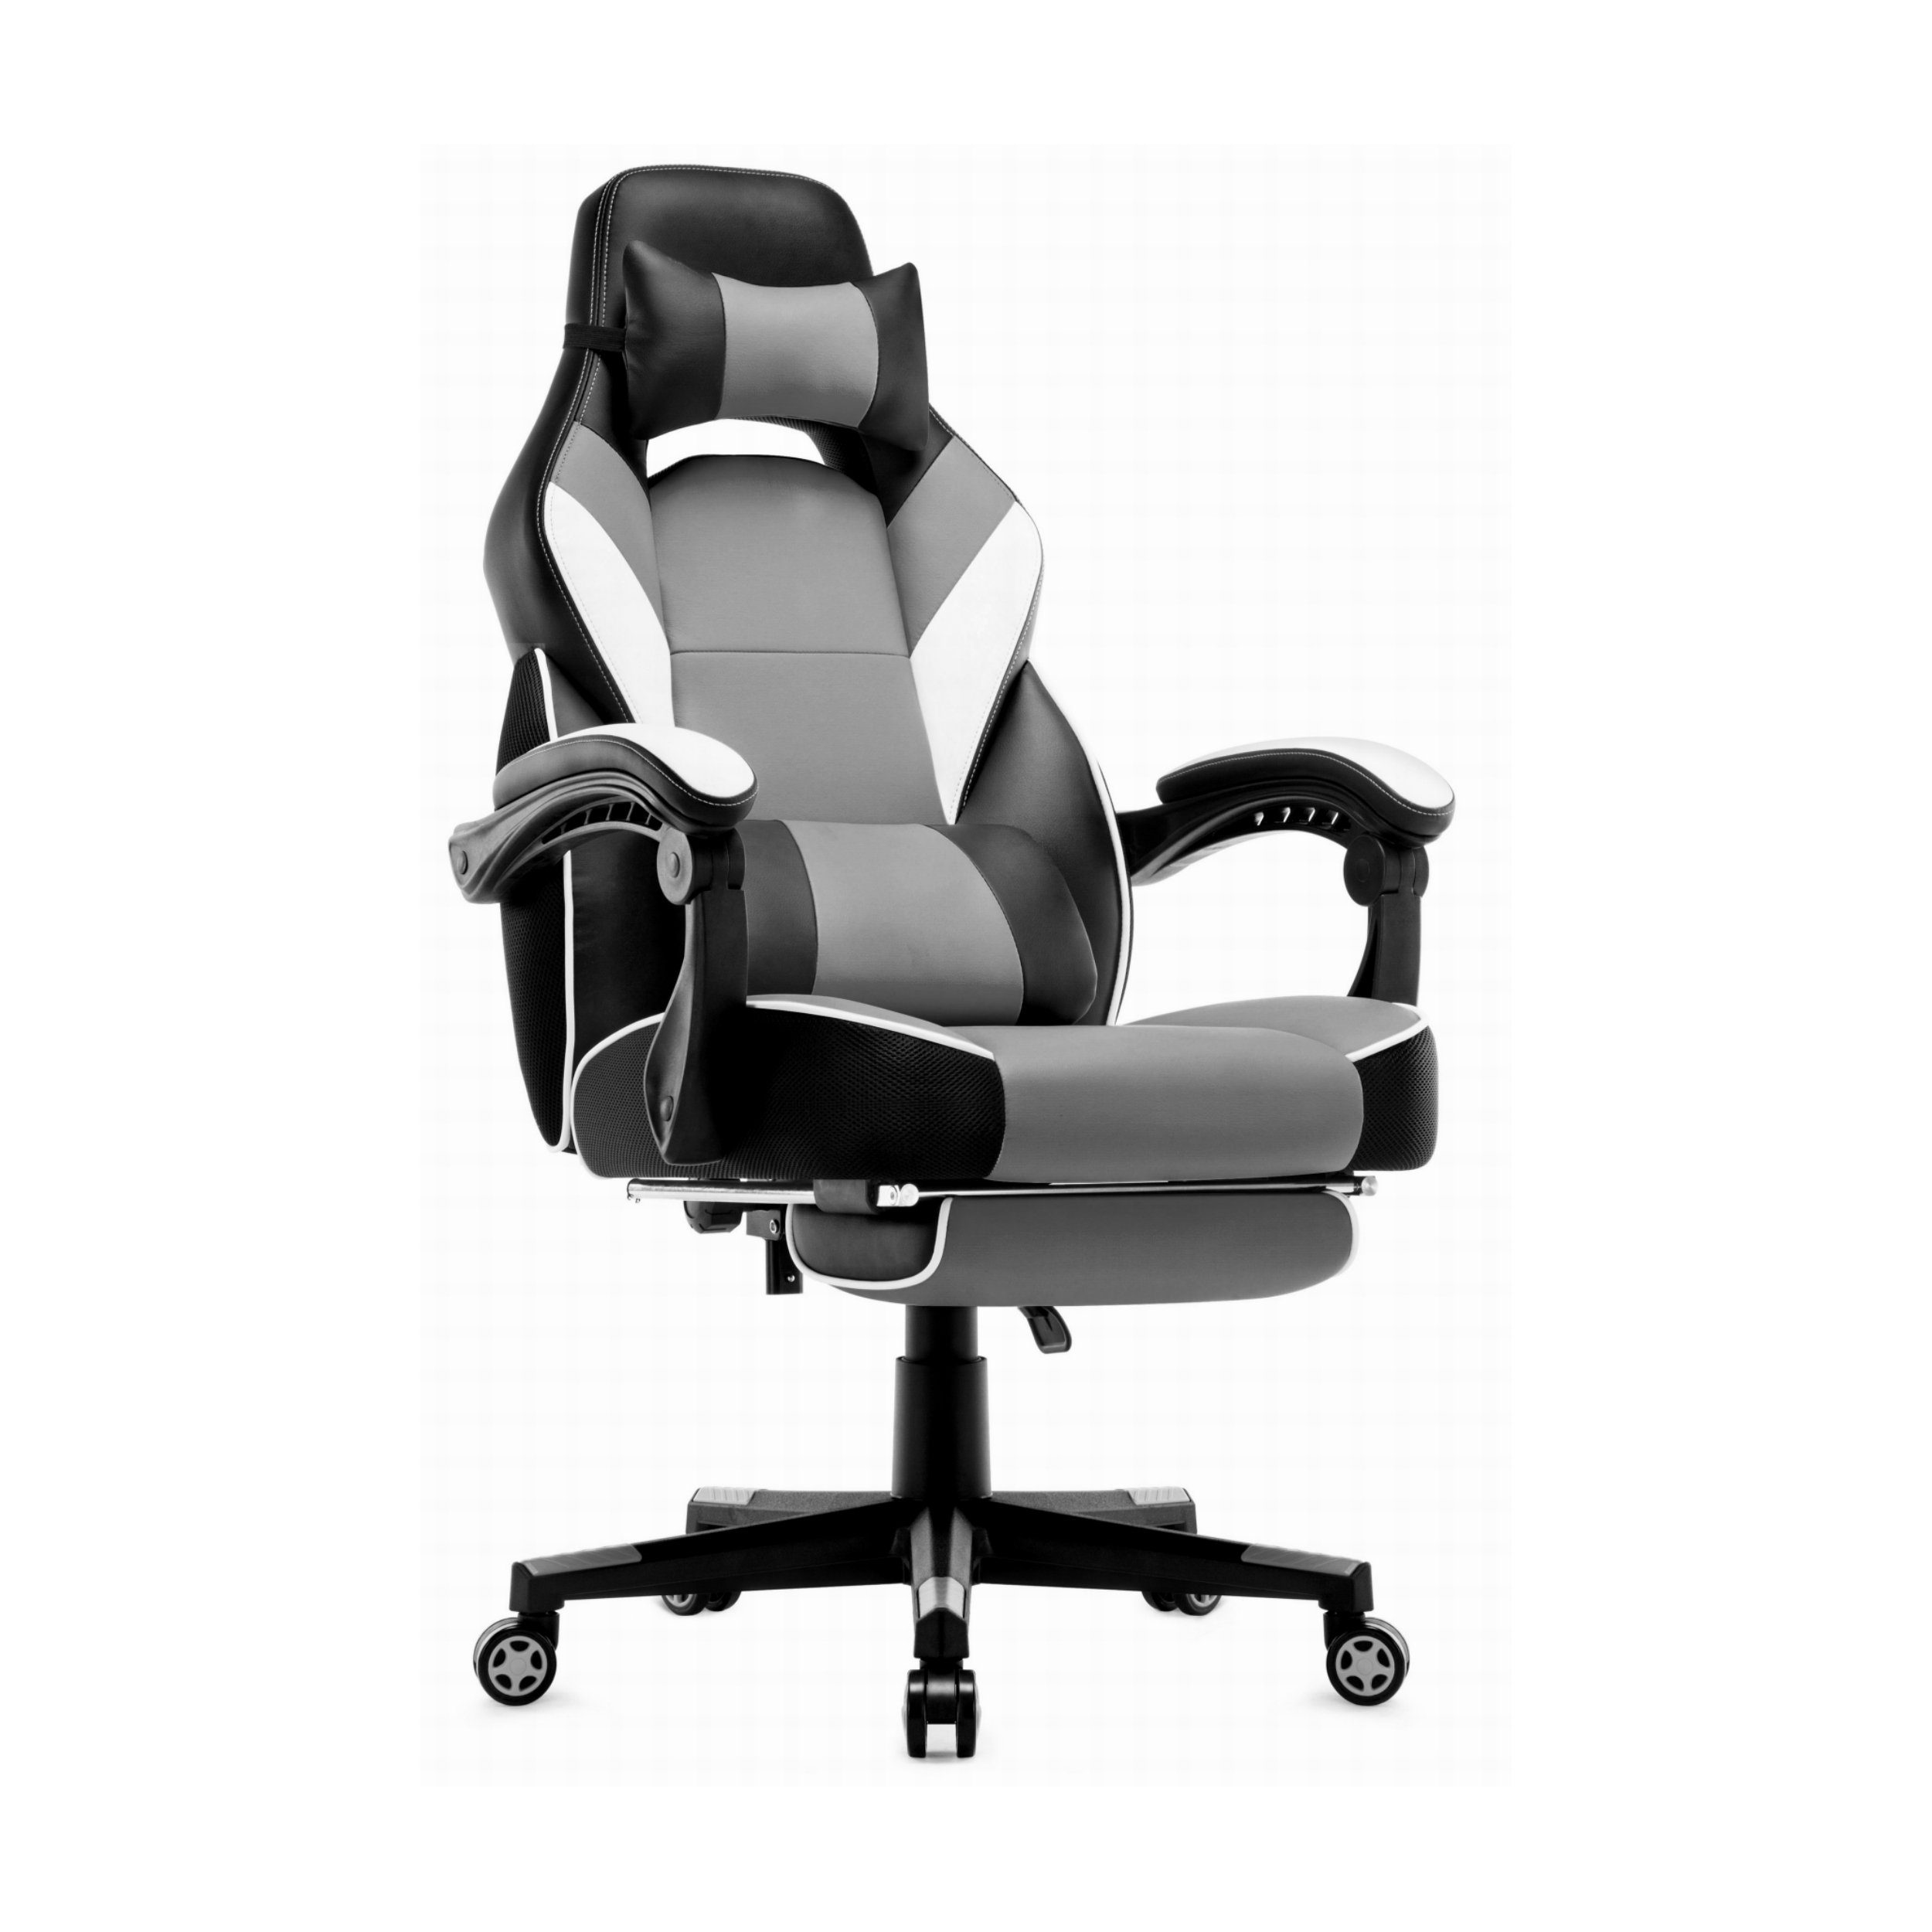 Intimate WM Heart Gaming-Stuhl und Fußstützen Hoher Rückenlehne grau mit